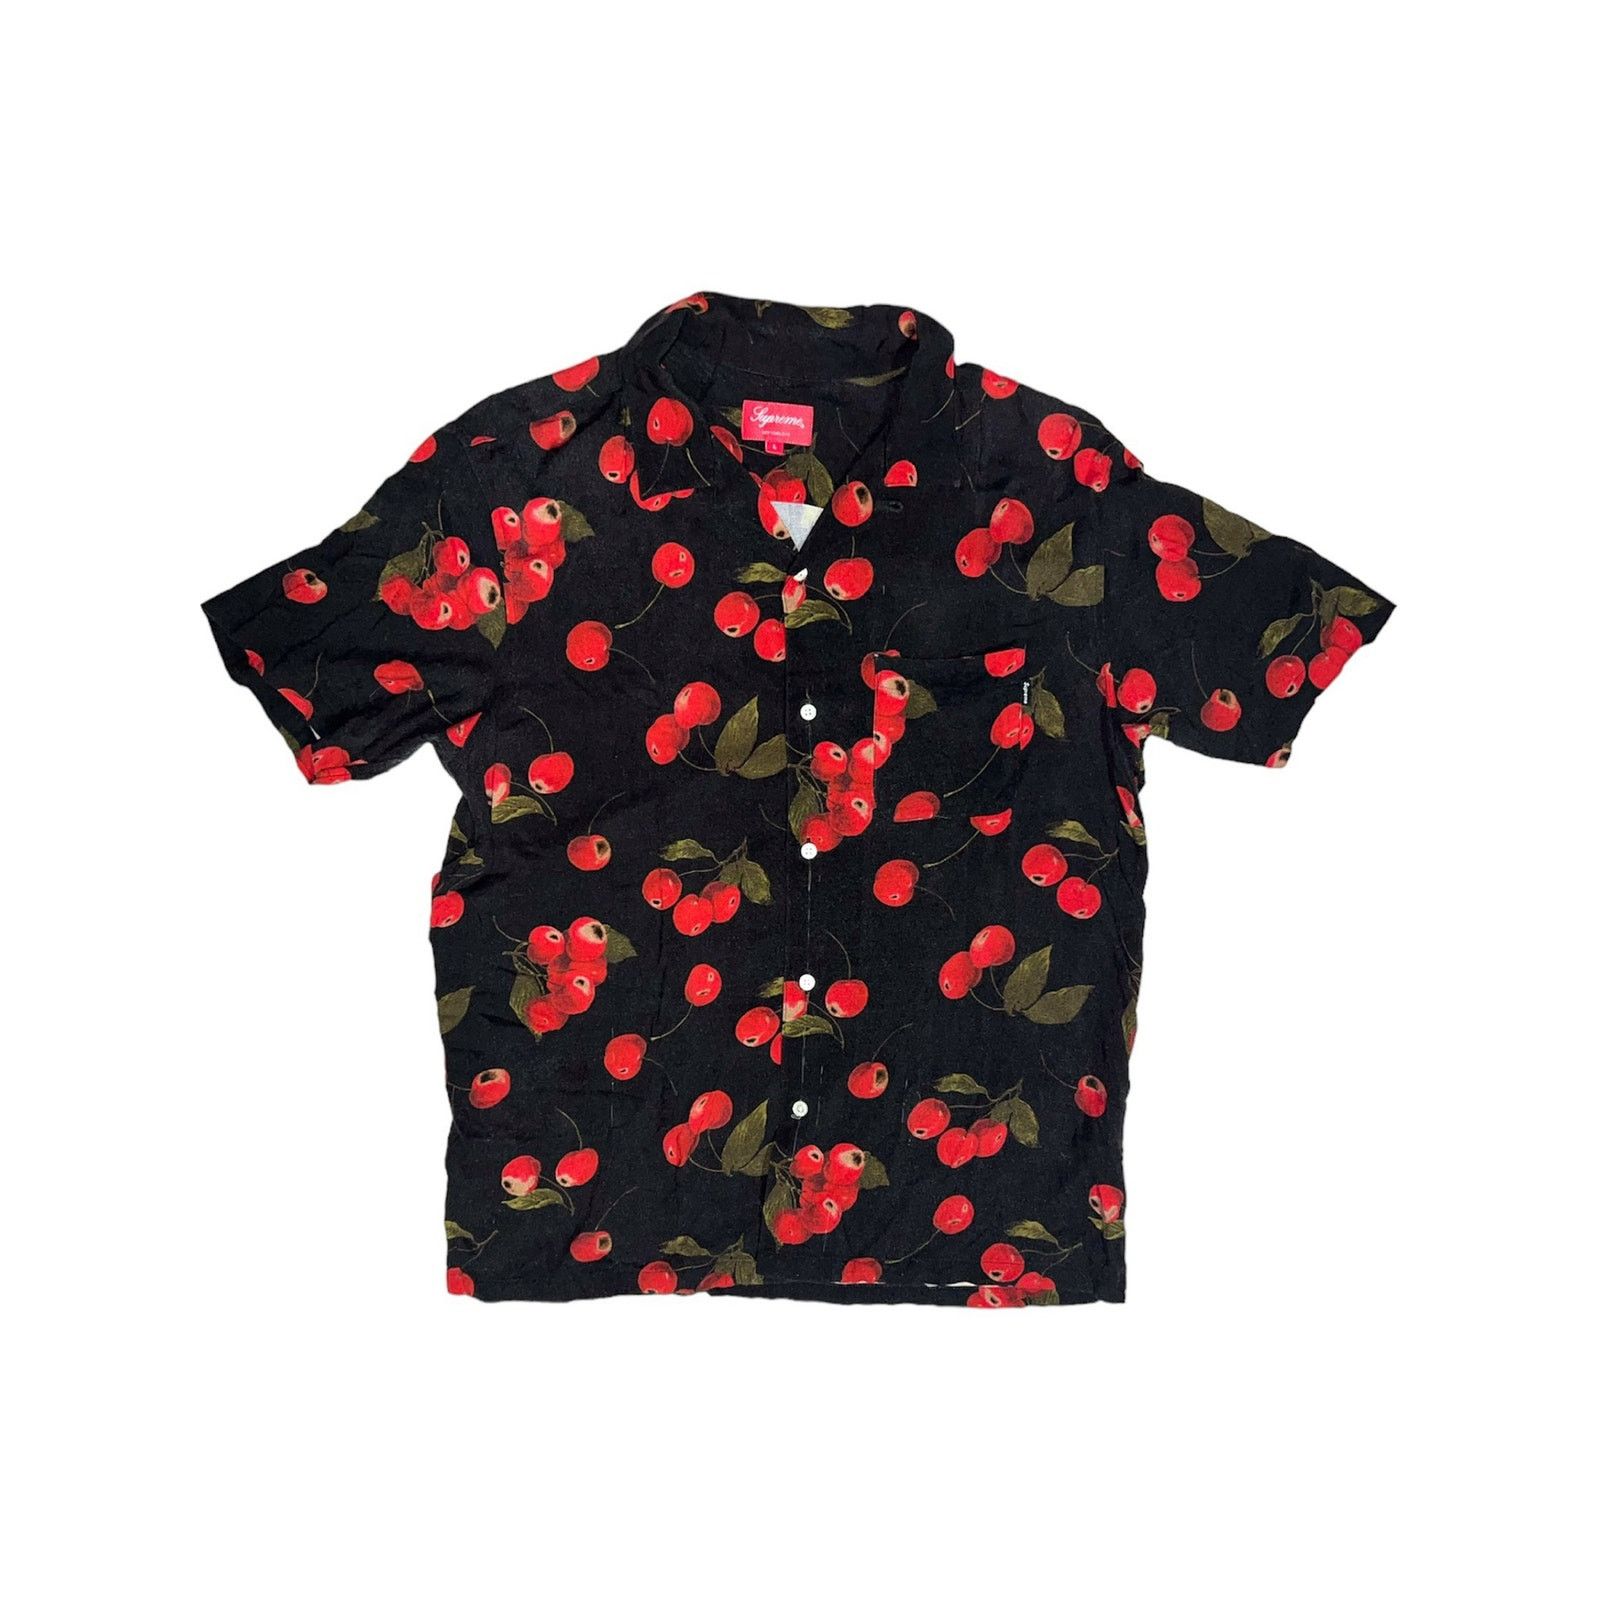 Supreme Supreme Cherry Rayon Shirt | Grailed